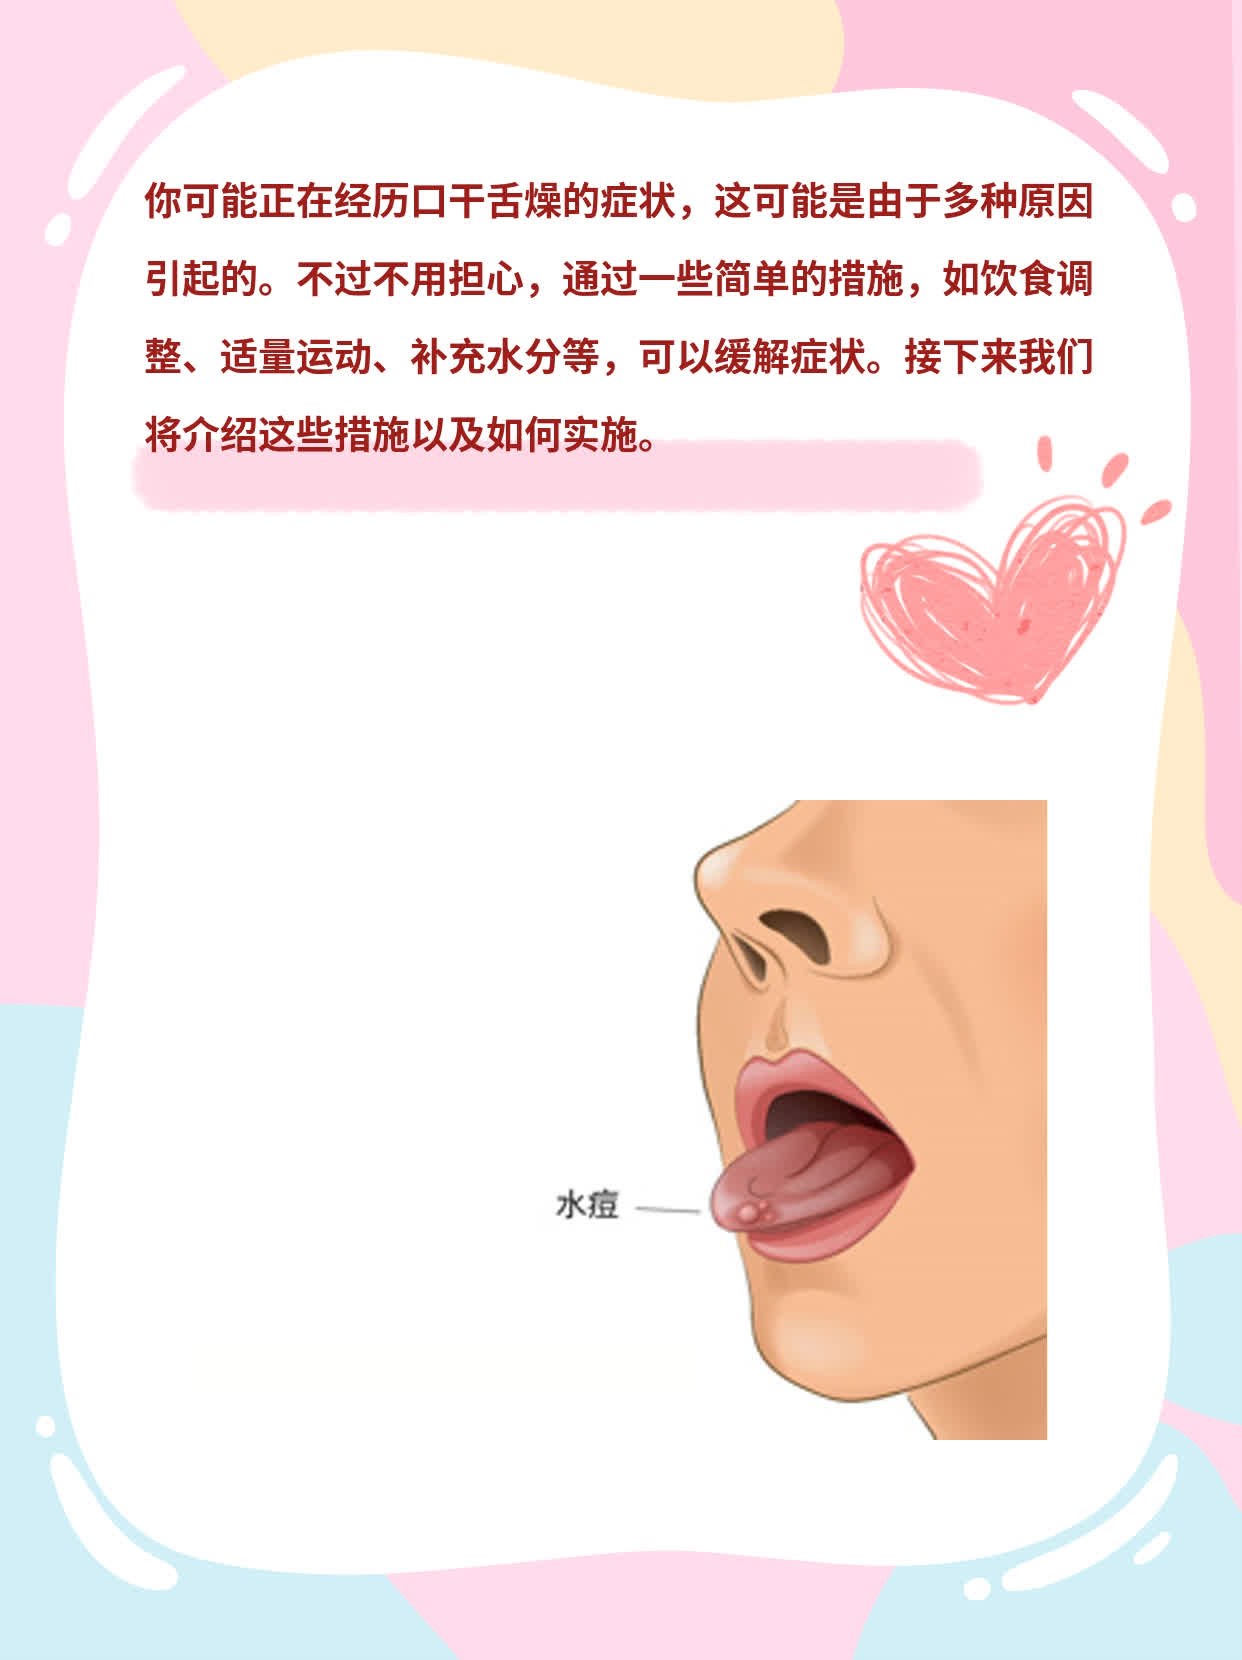 「口干舌燥」背后的原因及药物解救方案